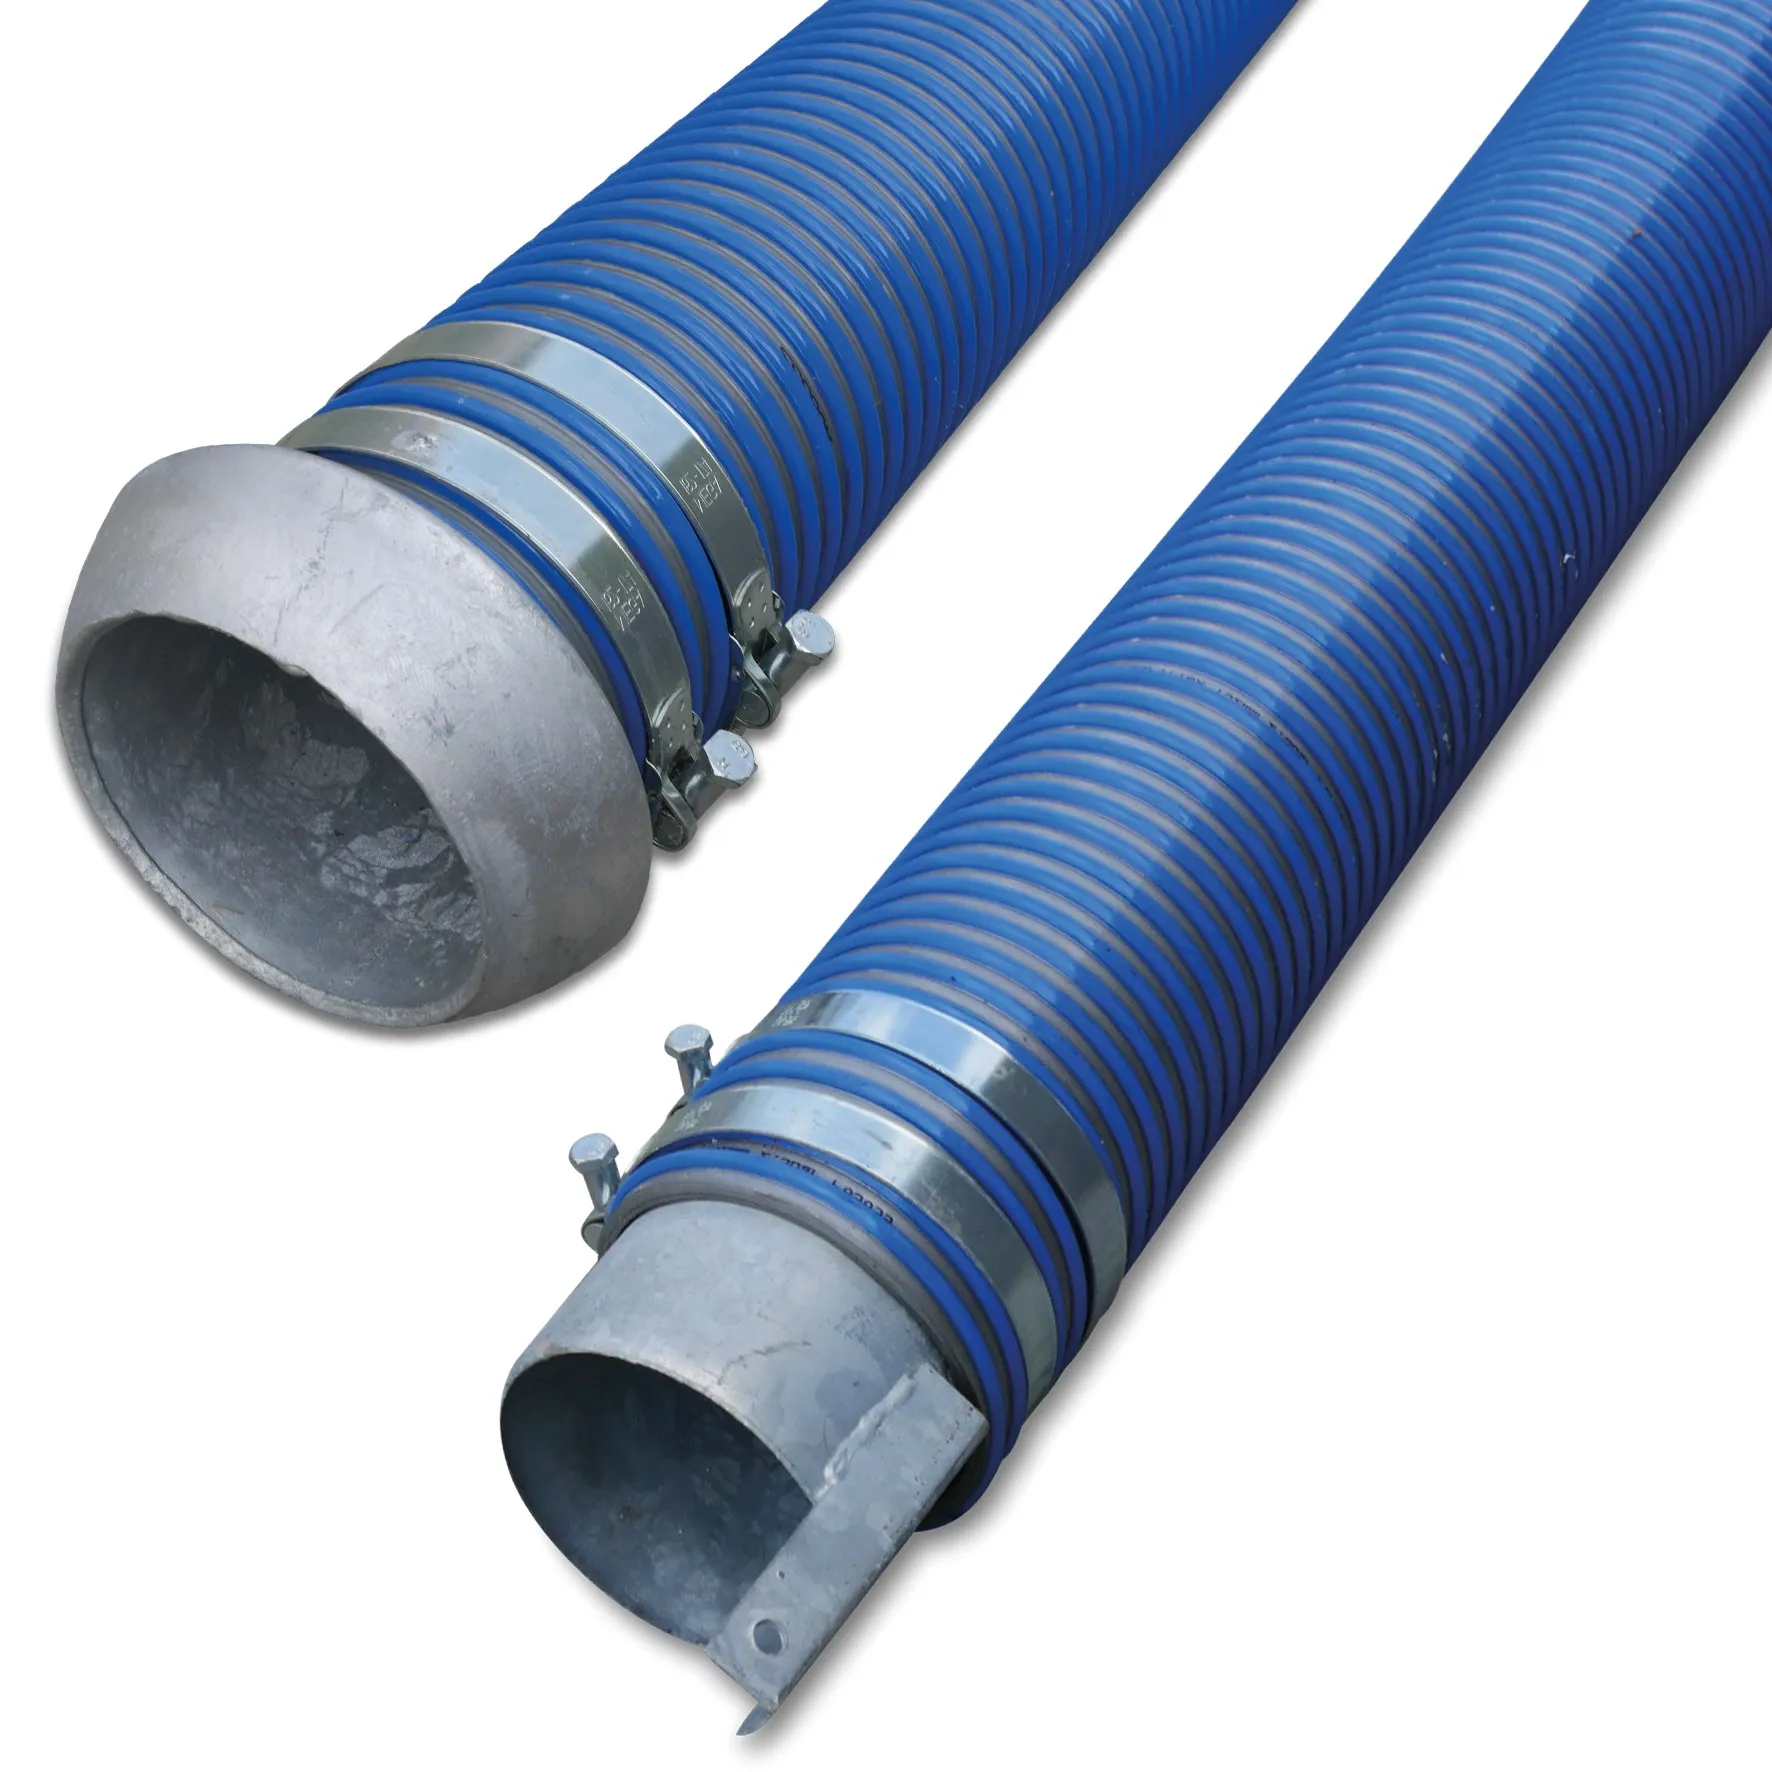 Spiralsaug- und Druckschlauch PVC 152 mm V-Teil Kardan x Endstück 2bar Blau/Grau 4m type Agriflex